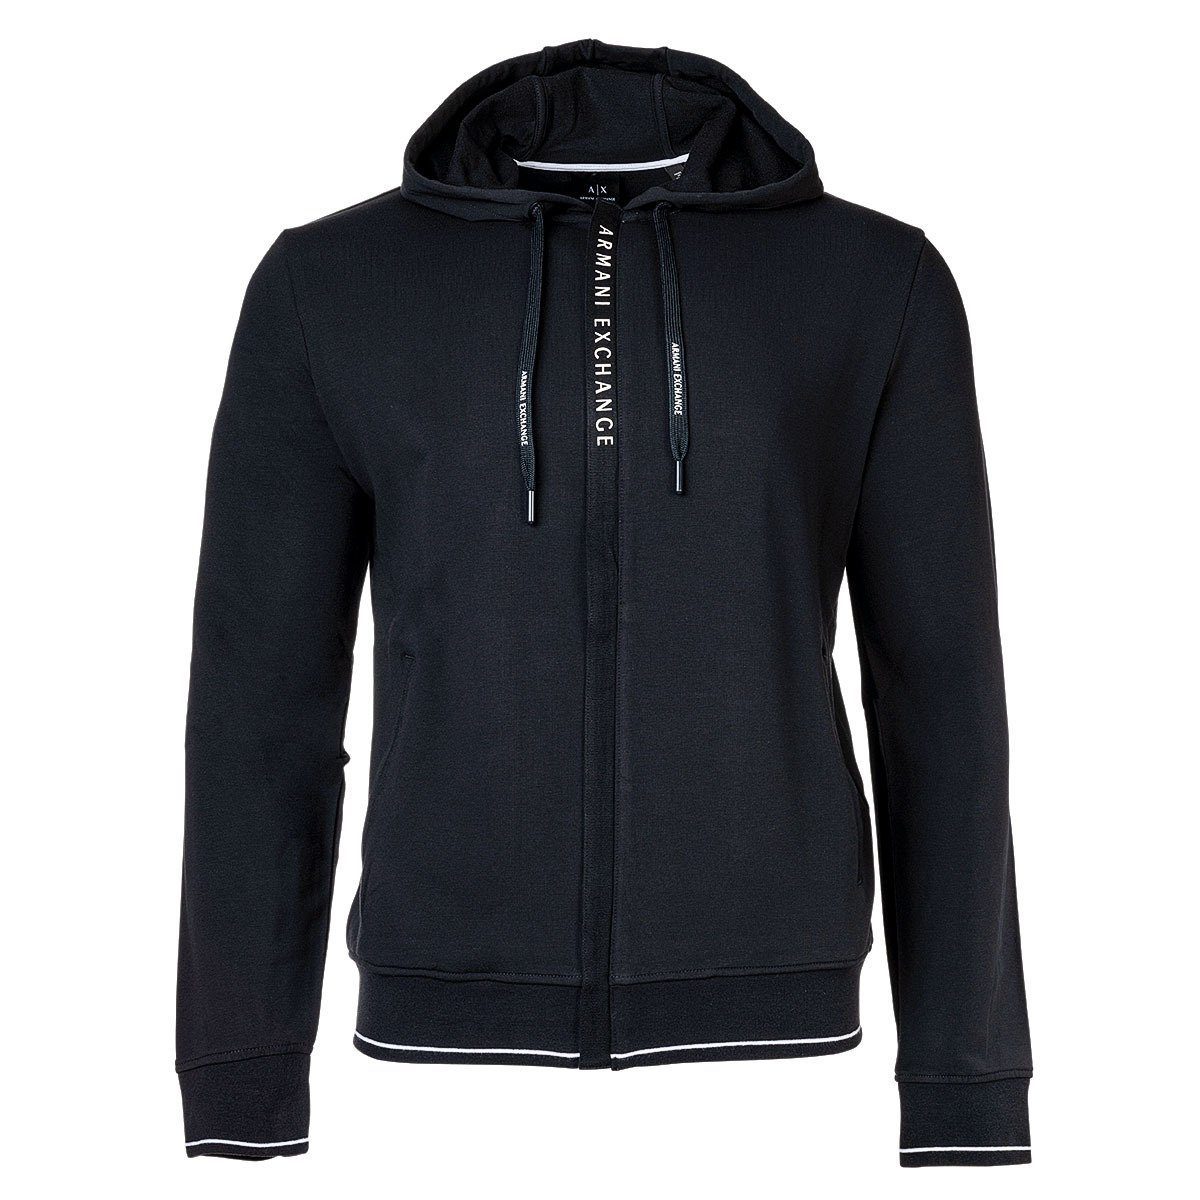 ARMANI EXCHANGE Sweatshirt »Herren Jacke - Sweatshirtjacke, Baumwolle,  Logo« online kaufen | OTTO